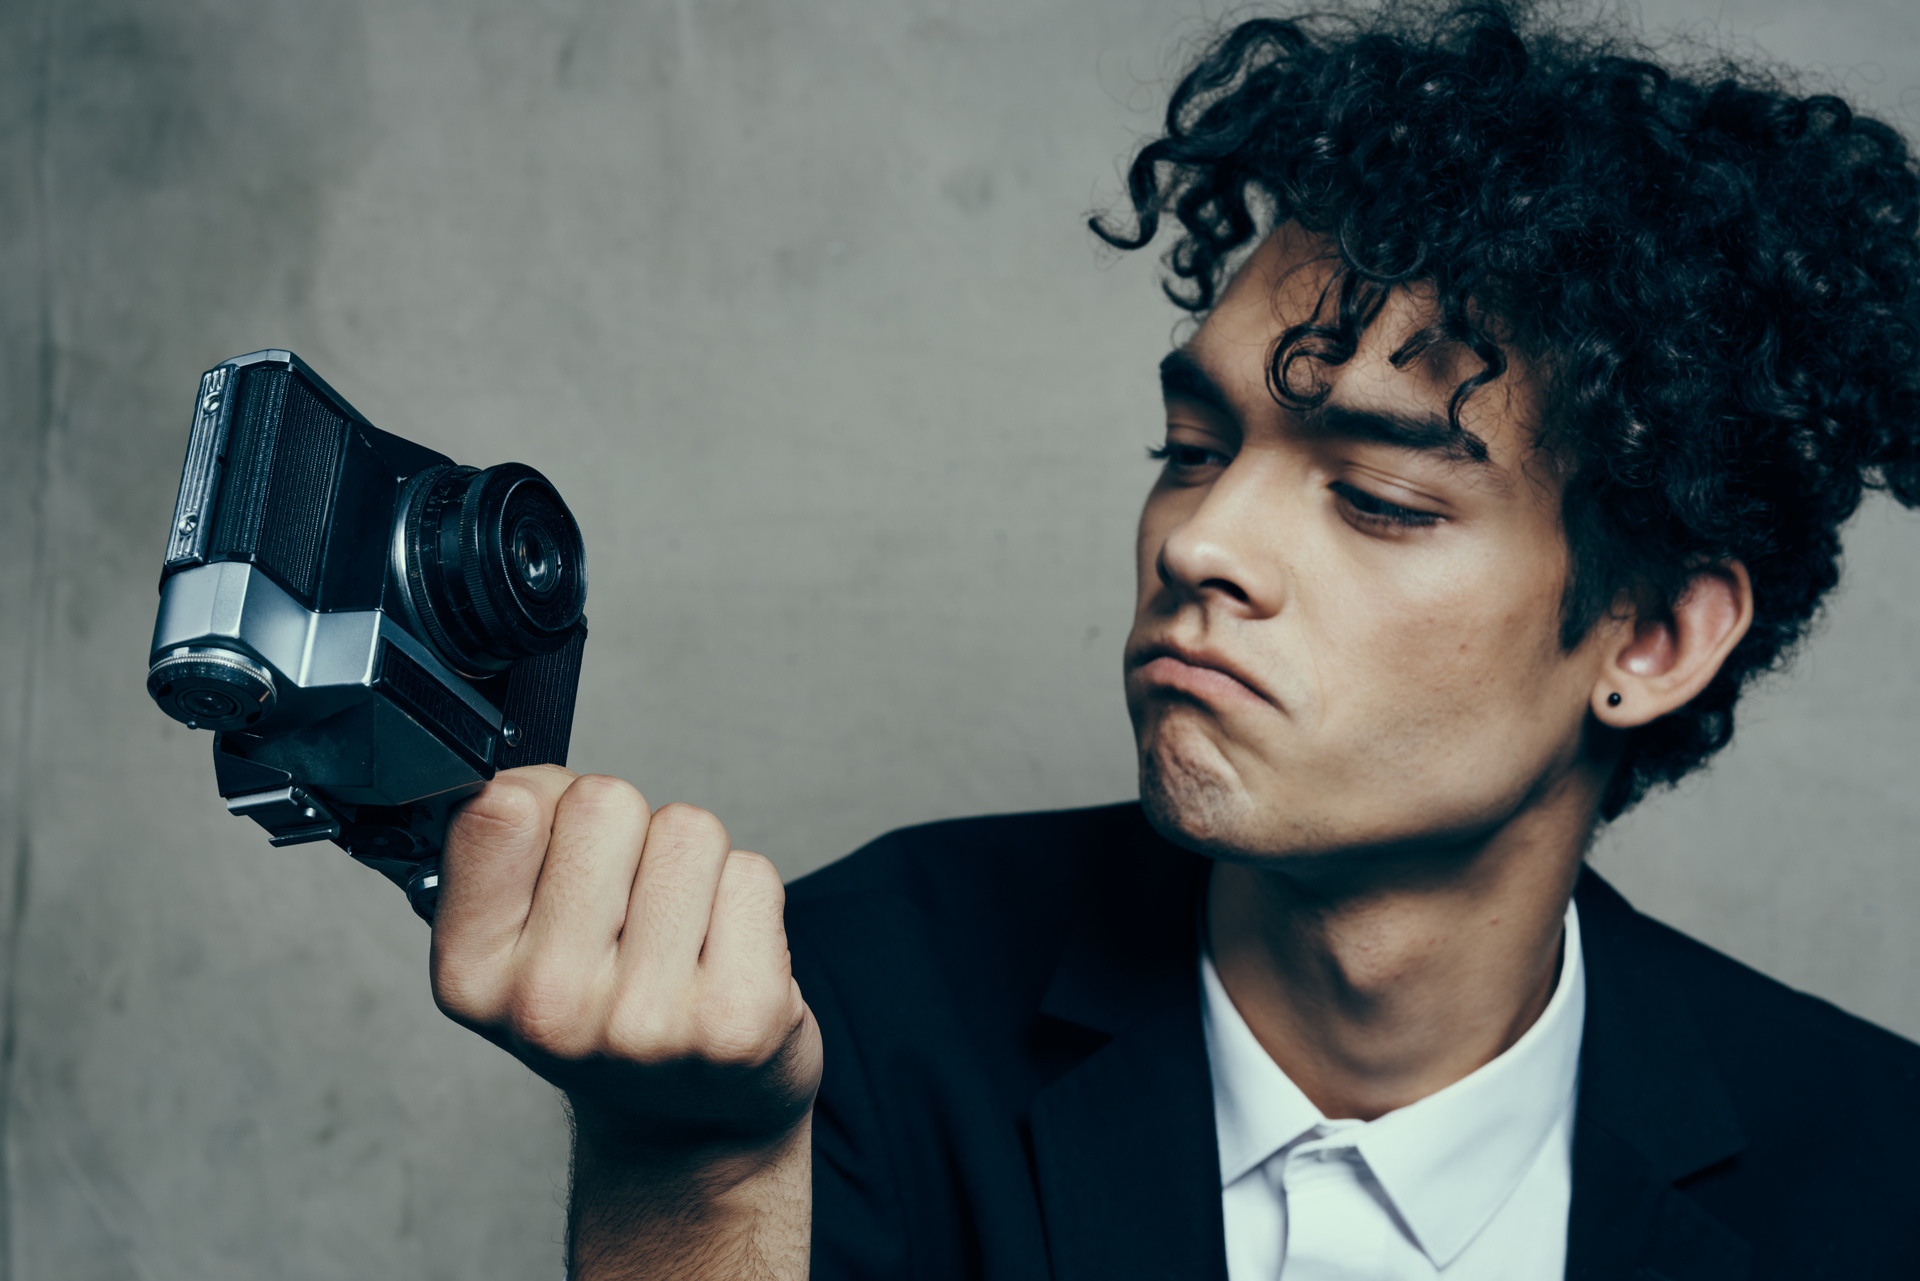 Stylowo ubrany młody mężczyzna z kręconymi włosami i z aparatem w ręku w studio fotograficznym